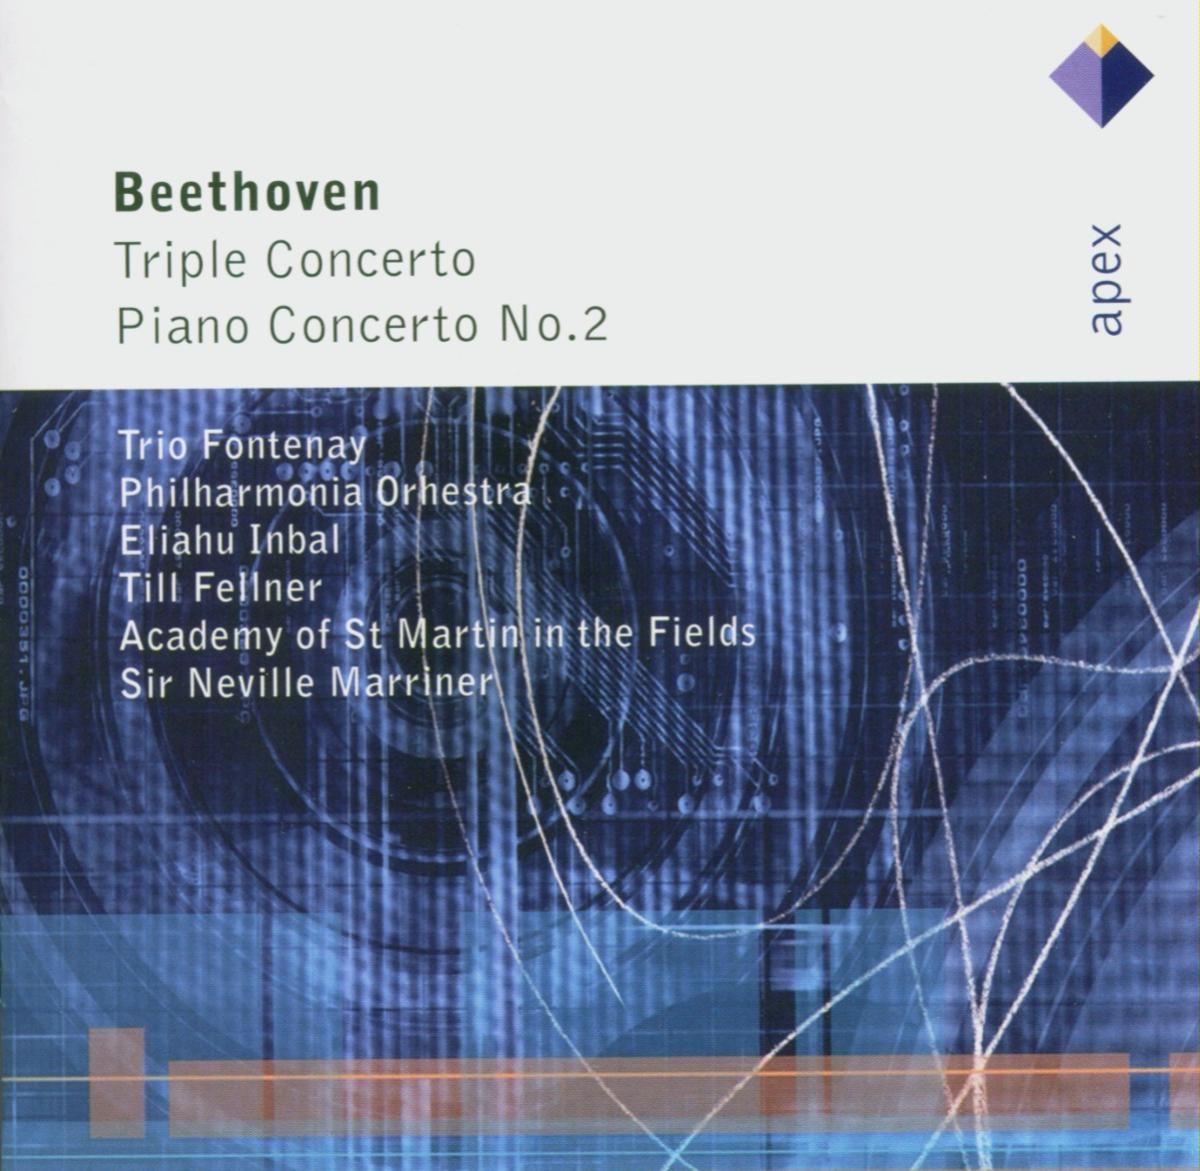 Beethoven : Piano Concerto No.2 in B flat major Op.19 : I Allegro con brio